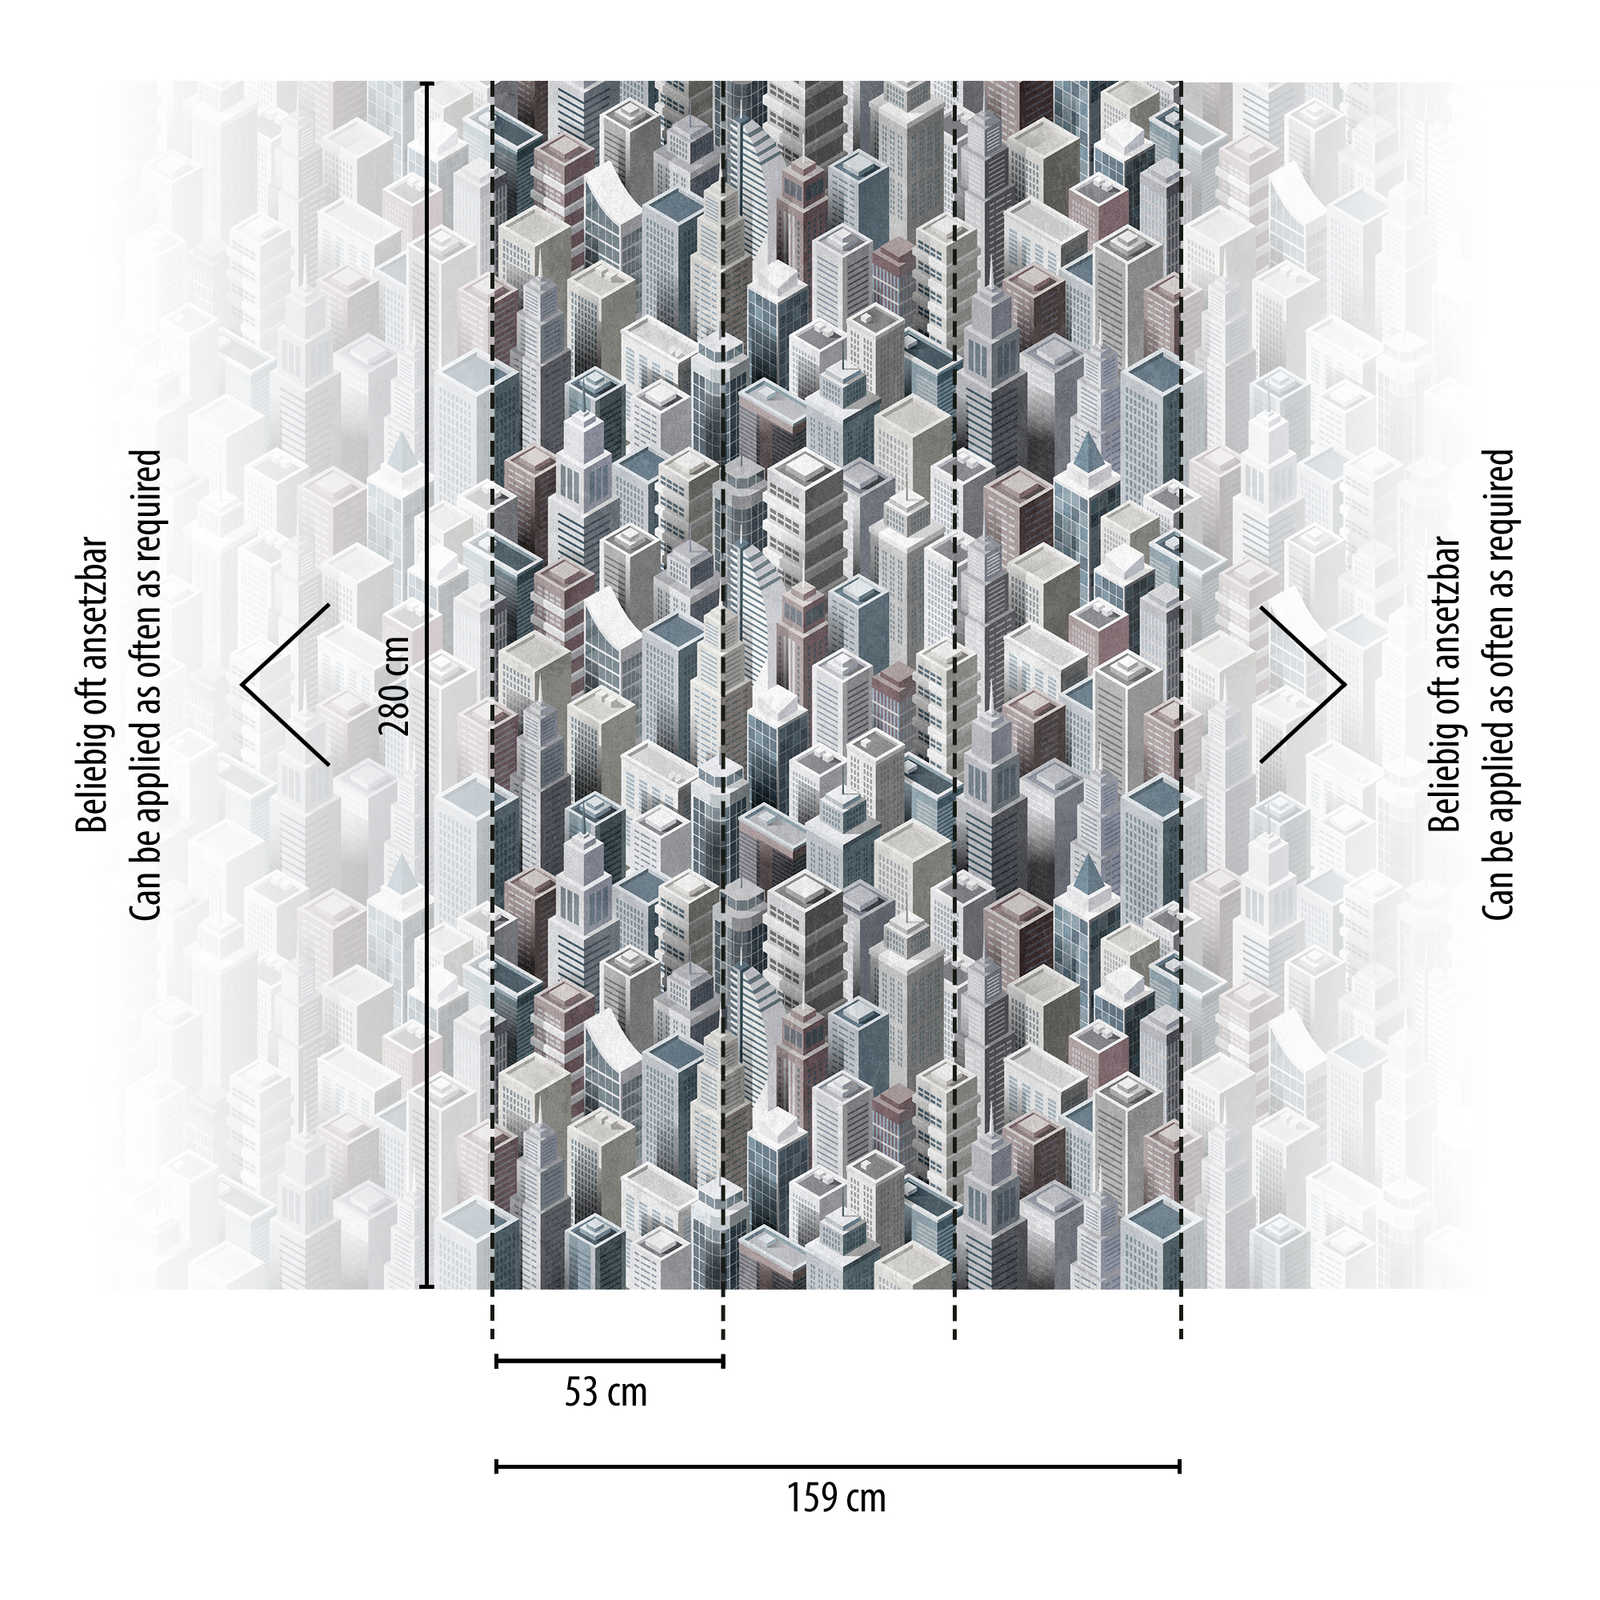             behang nieuwigheid - motief behang wolkenkrabber 3D patroon stedelijk
        